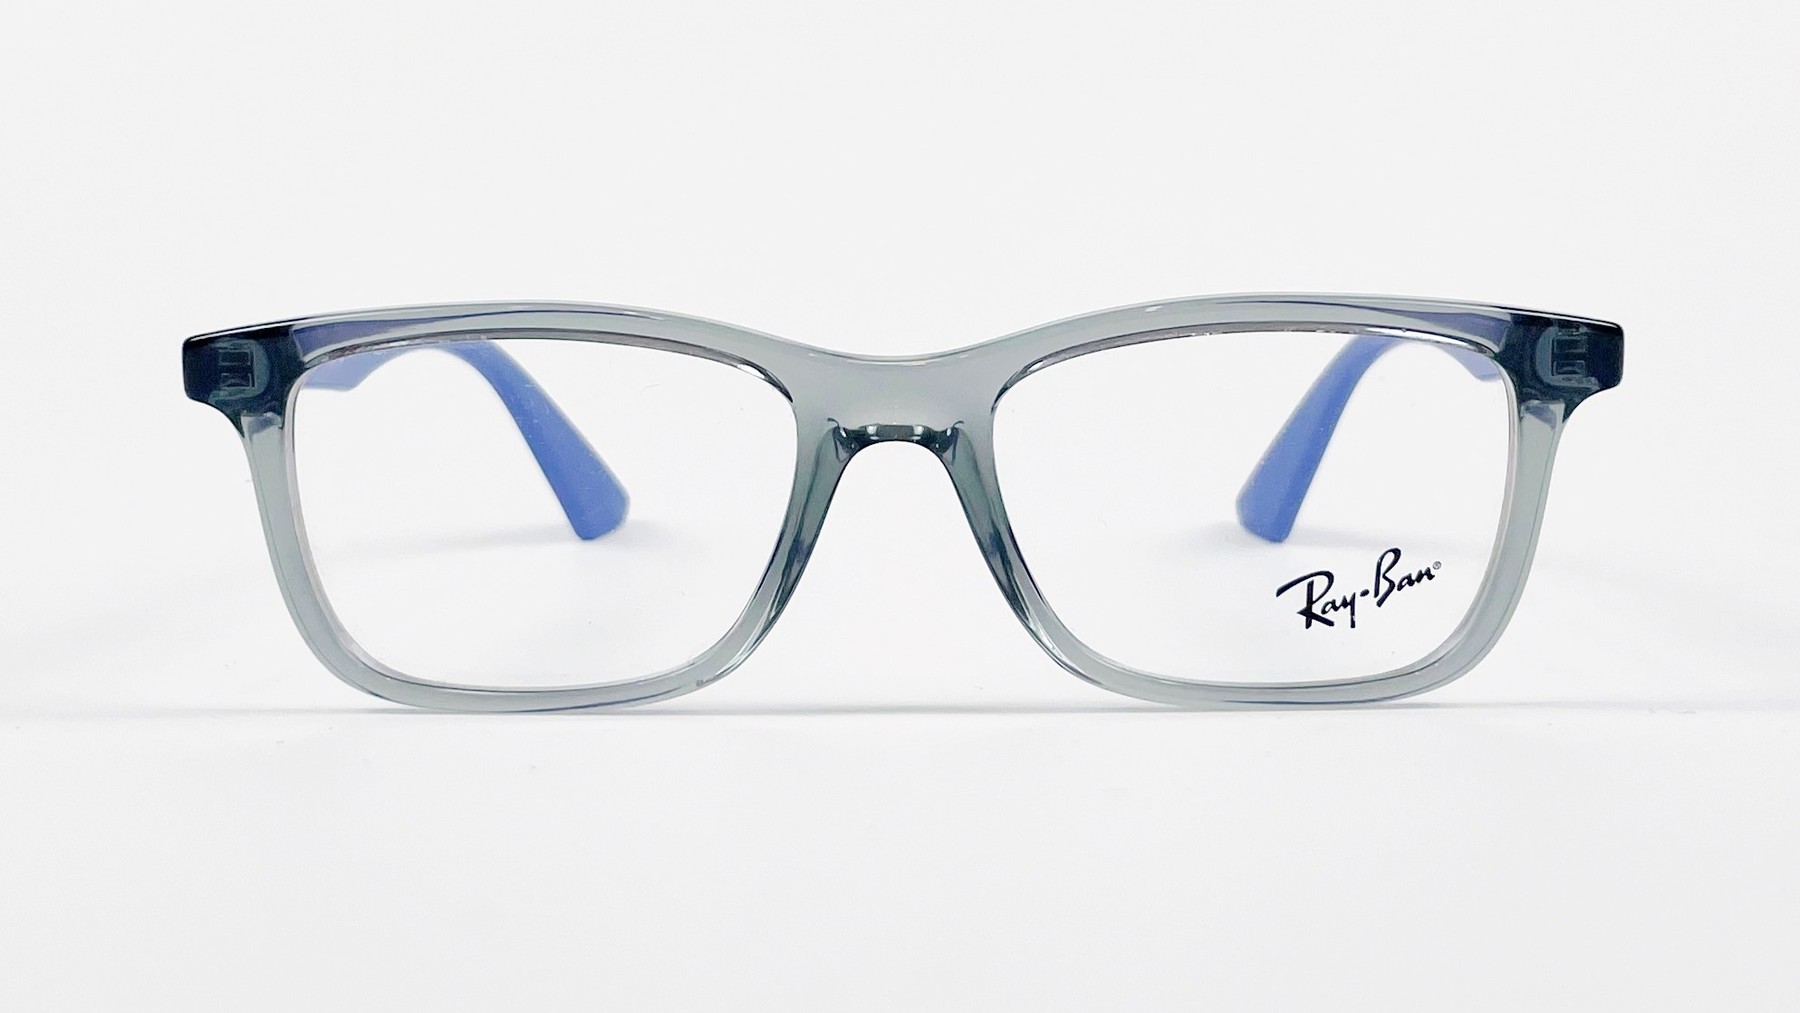 RayBan RB1562 4745, Korean glasses, sunglasses, eyeglasses, glasses